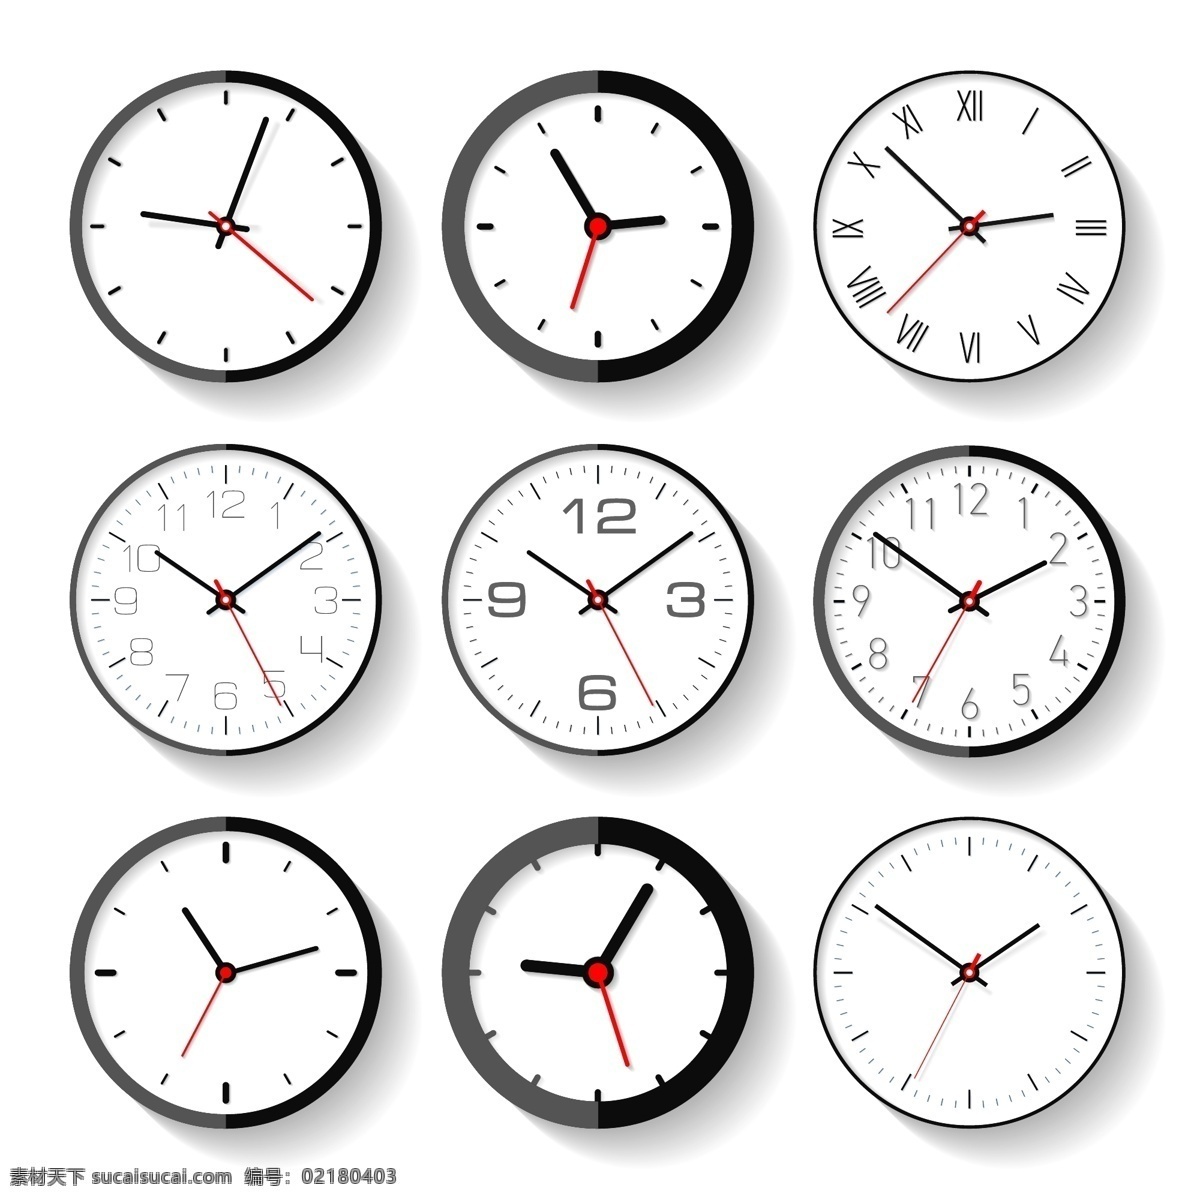 时尚钟表 钟表 时尚 时间 盘子 钟点 表 表盘 指针 手绘时钟 字幕卡通 闹铃 钟表指针 可爱png 指针时钟 时间素材 手绘图标 欧式时钟 欧式钟表 欧式图标 欧式卡通 设计素材 时钟设计